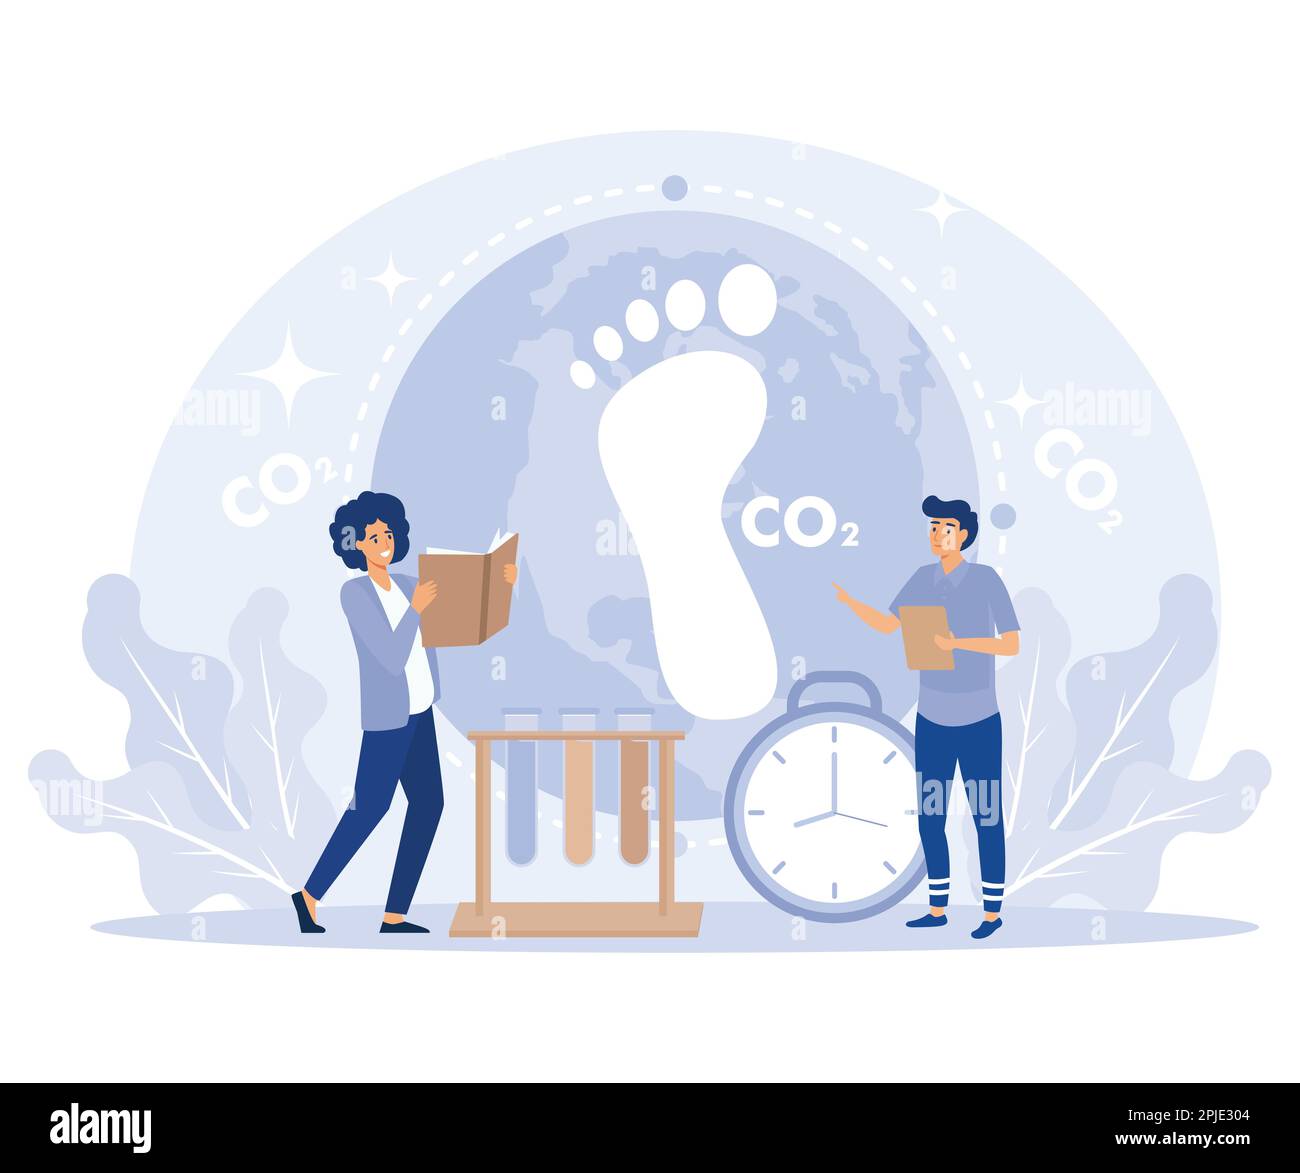 Analisi dell'impatto delle emissioni di CO2, inquinamento ambientale con CO2, analisi dell'impatto dei gas serra sull'ambiente, vettore piatto, illustre moderno Illustrazione Vettoriale